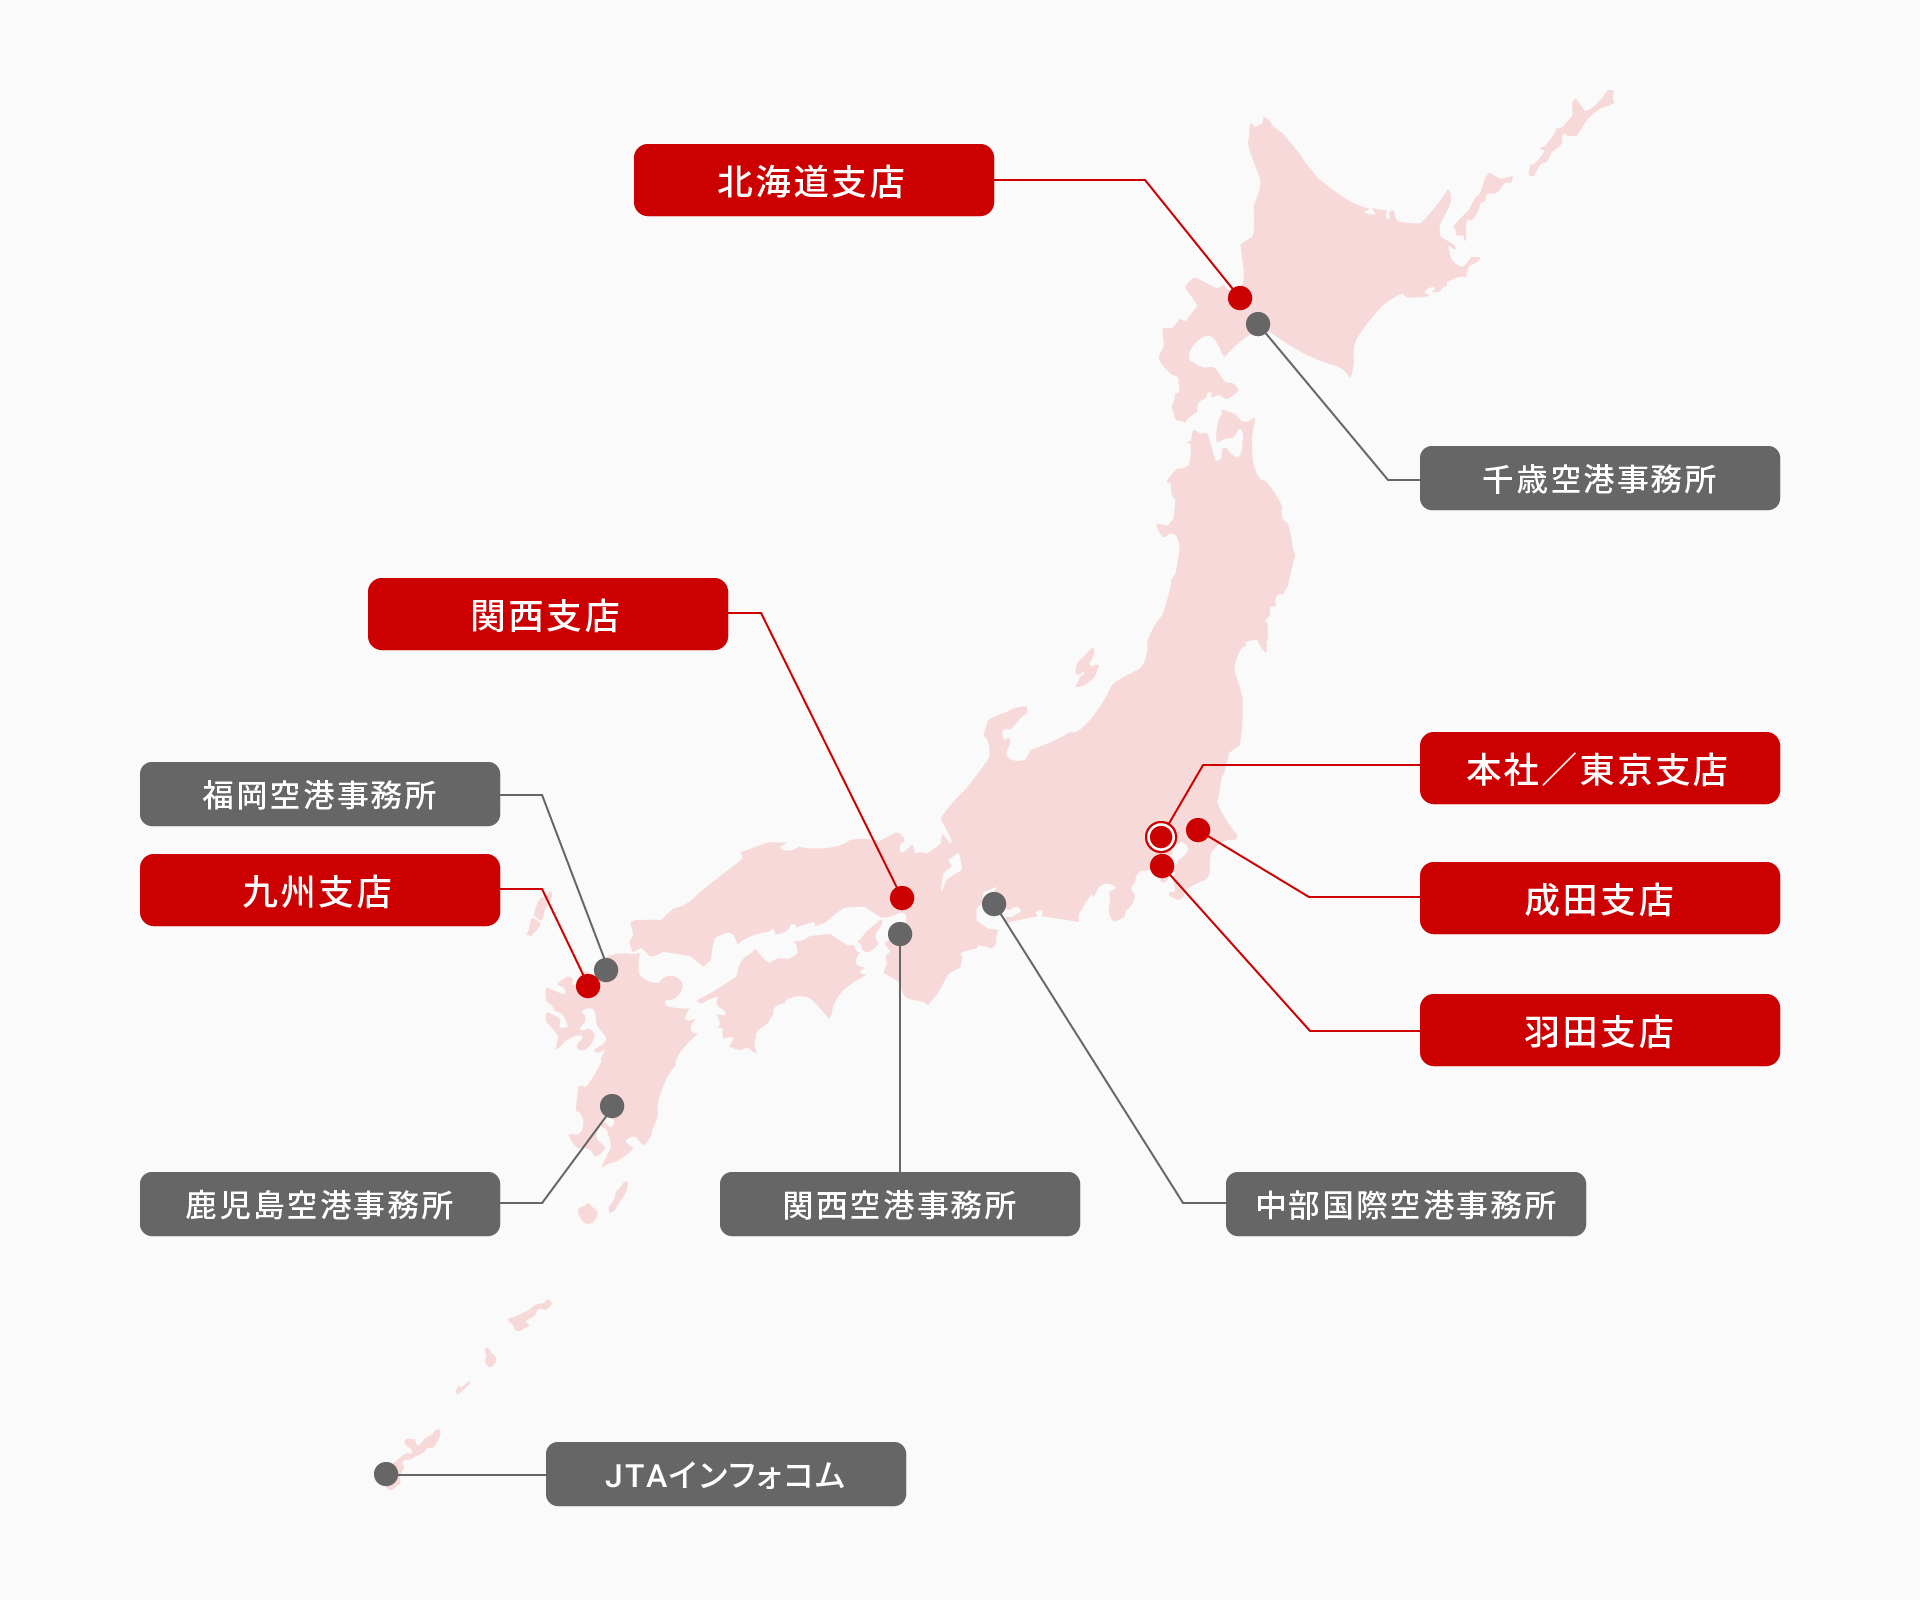 事業所一覧の場所を表記した日本地図